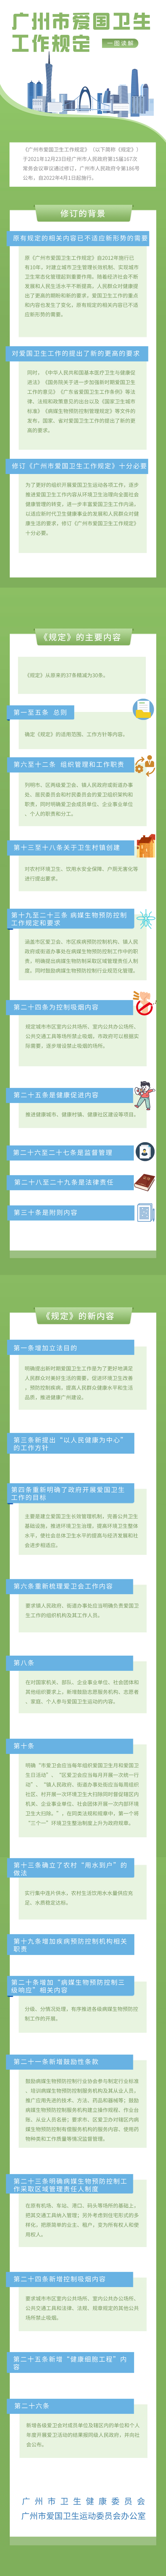 广州市爱国卫生运动规定一图解读.jpg